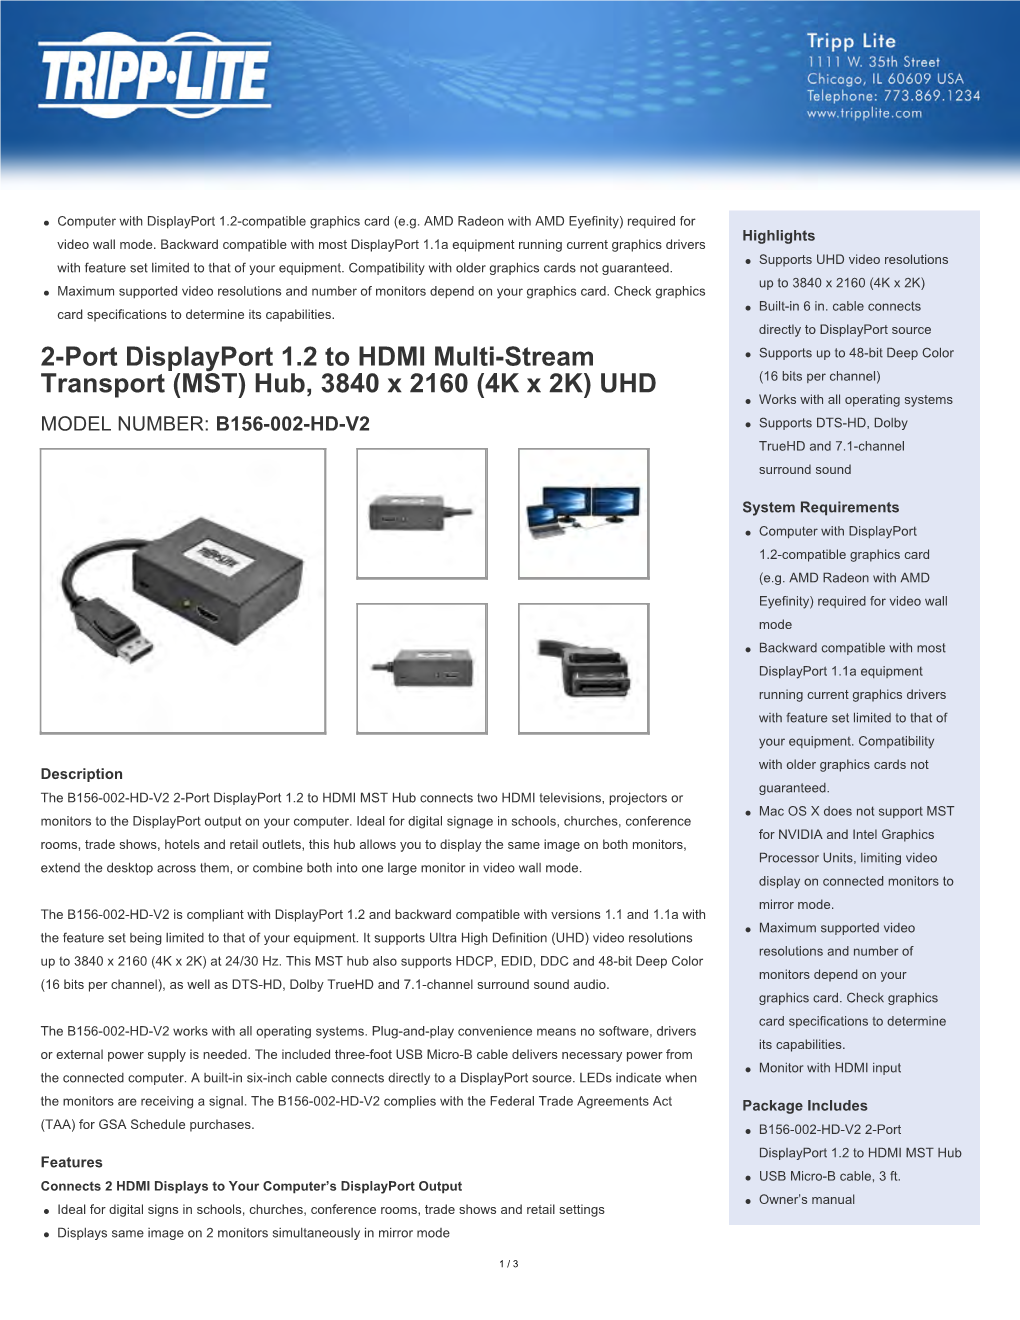 2-Port Displayport 1.2 to HDMI Multi-Stream Transport (MST) Hub, 3840 X 2160